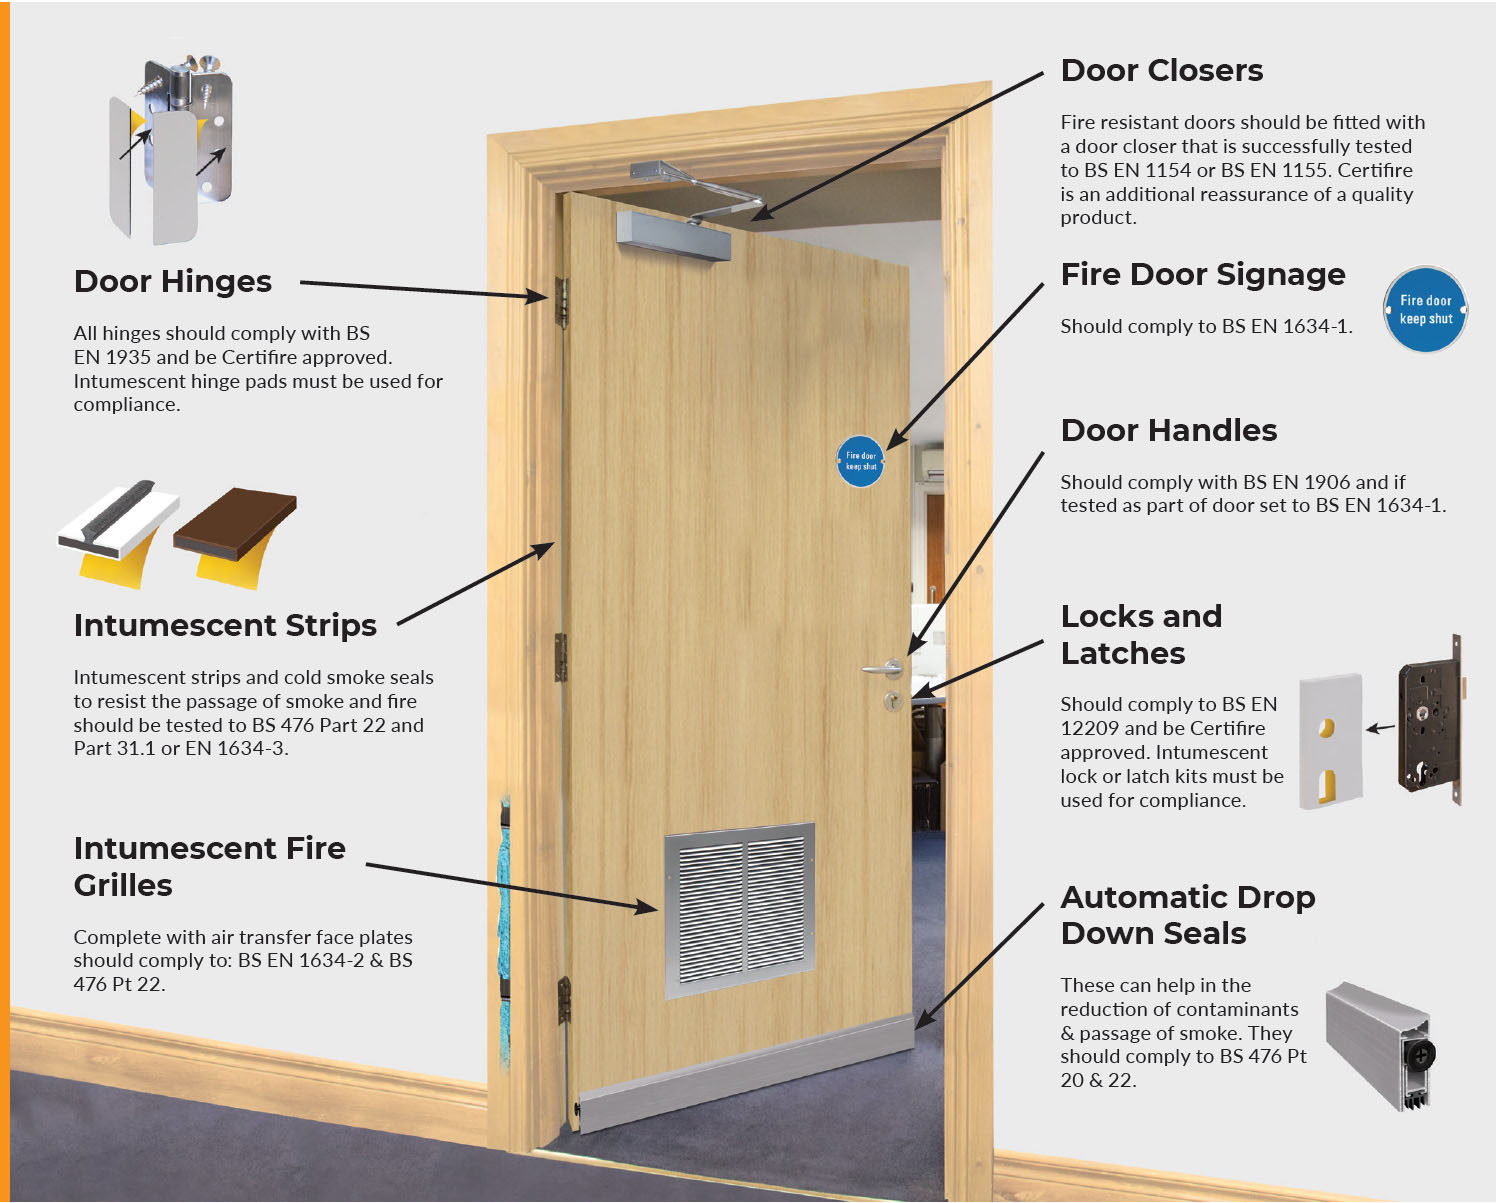 Requirements of a fire door